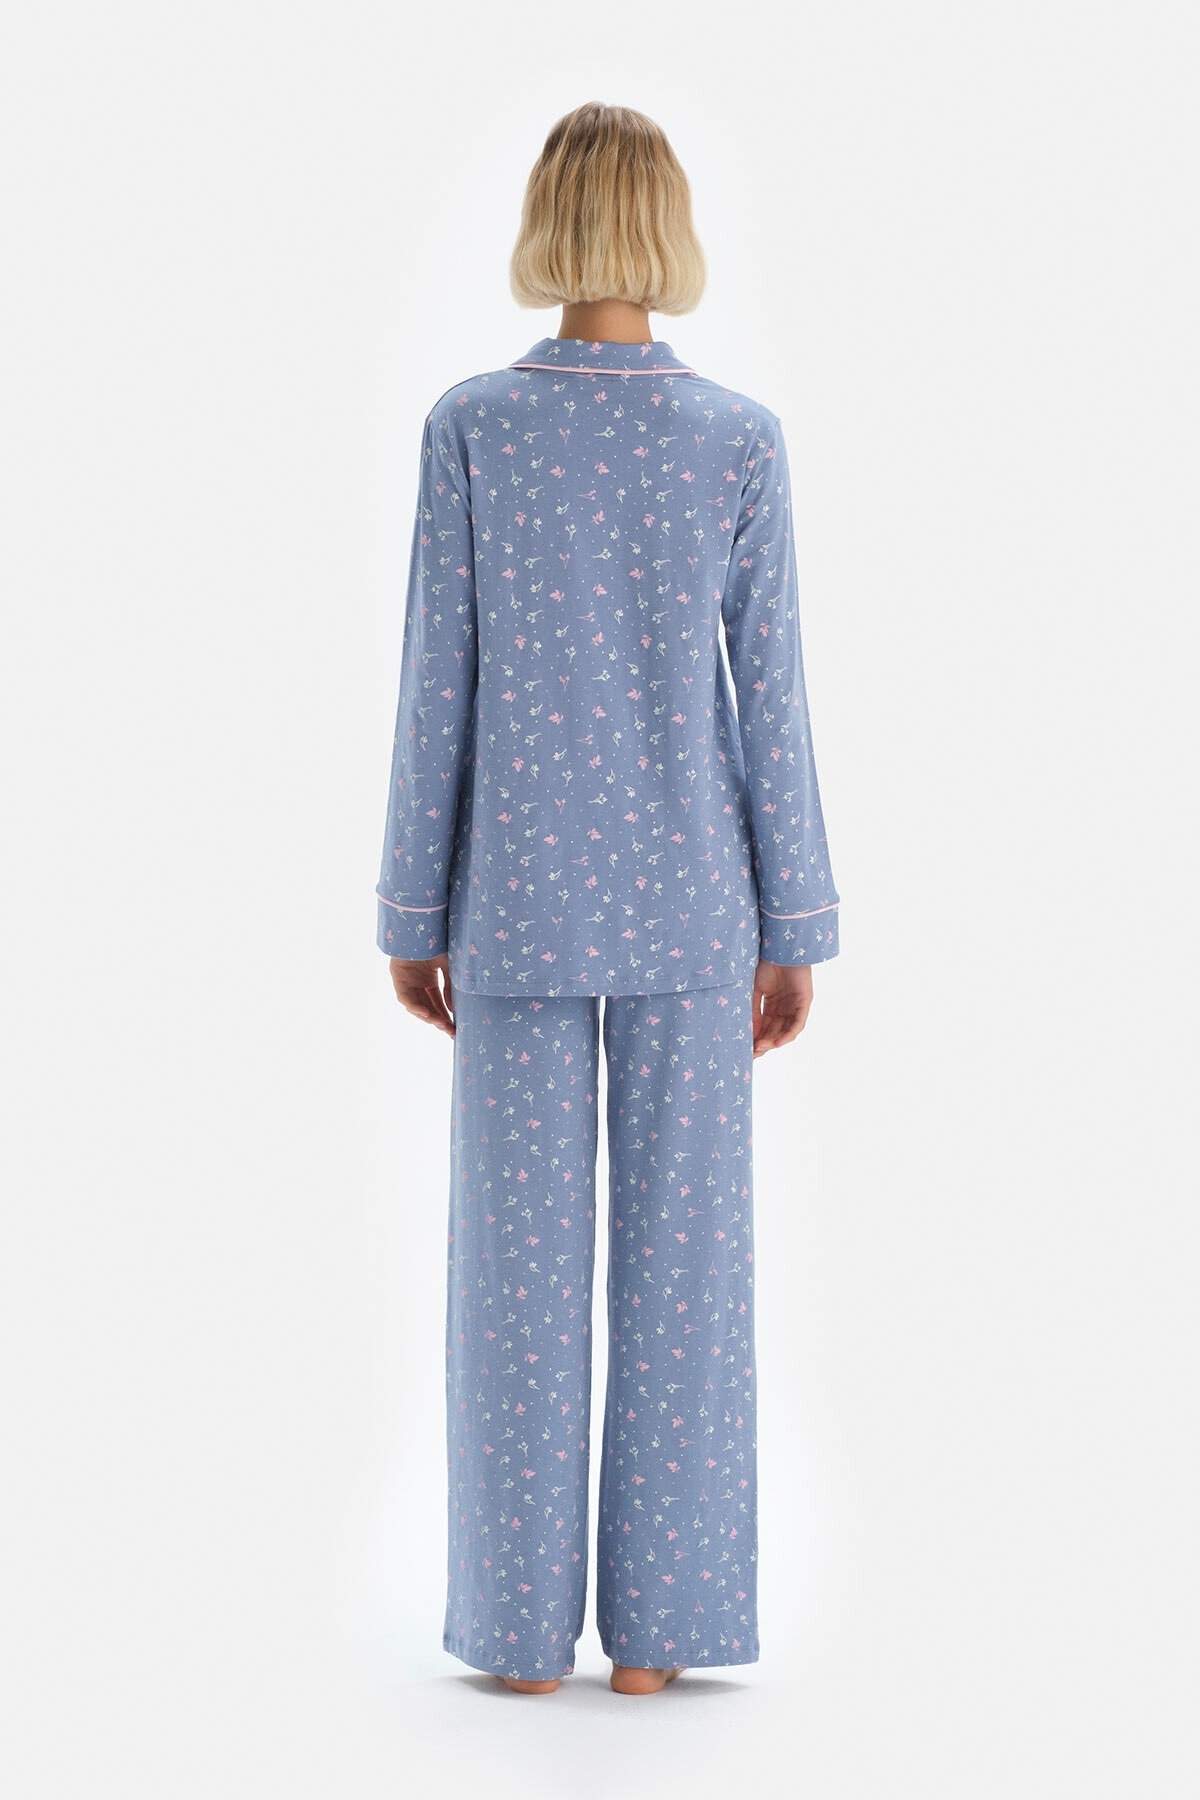 Dagi Mavi Çiçek Desenli Ceket Yaka Modal Hamile Kadın Pijama Takımı